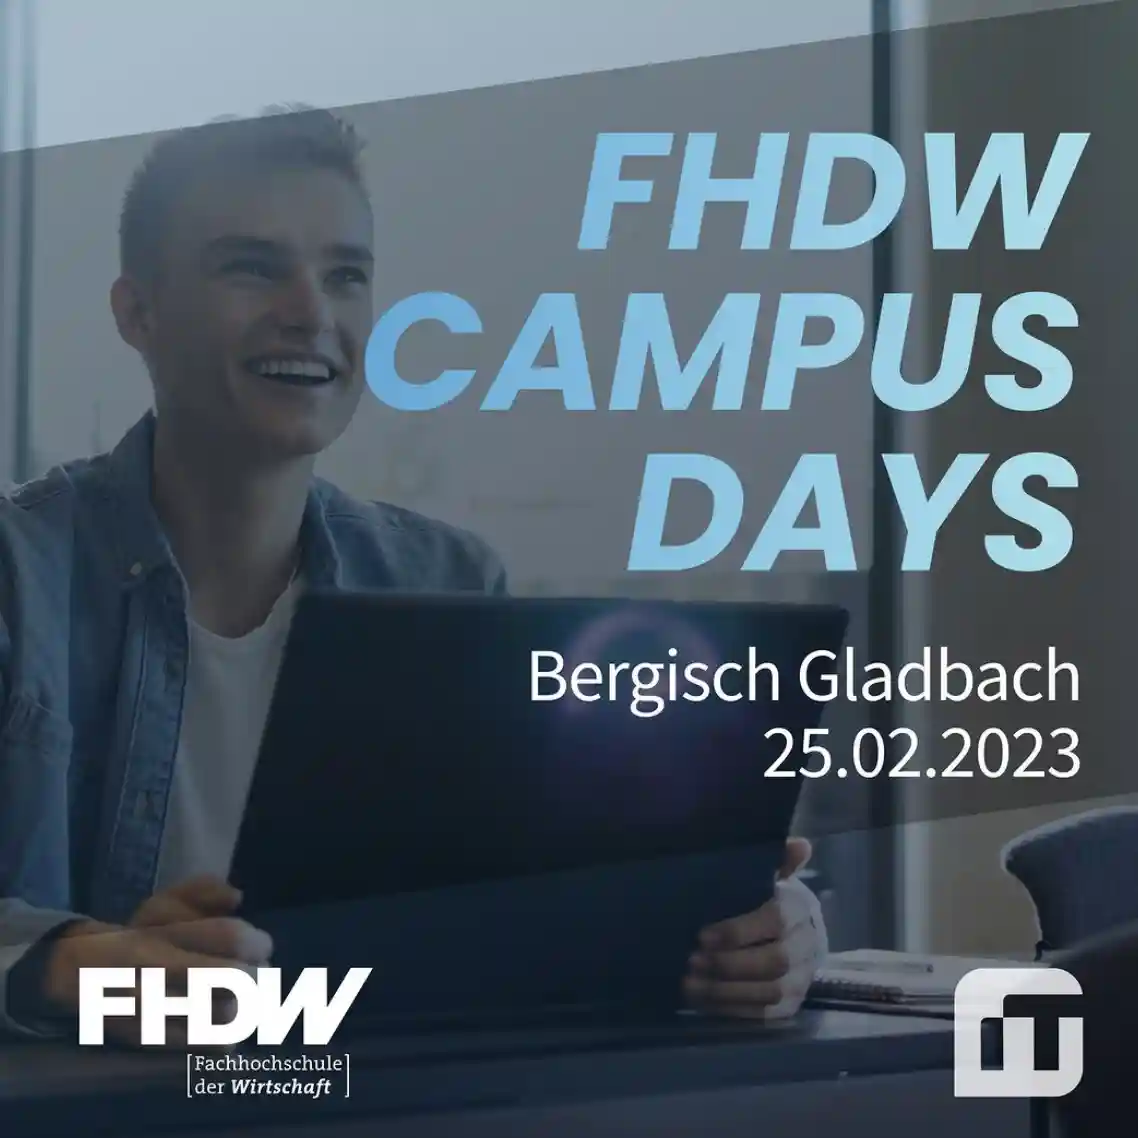 FHDW Campus Days